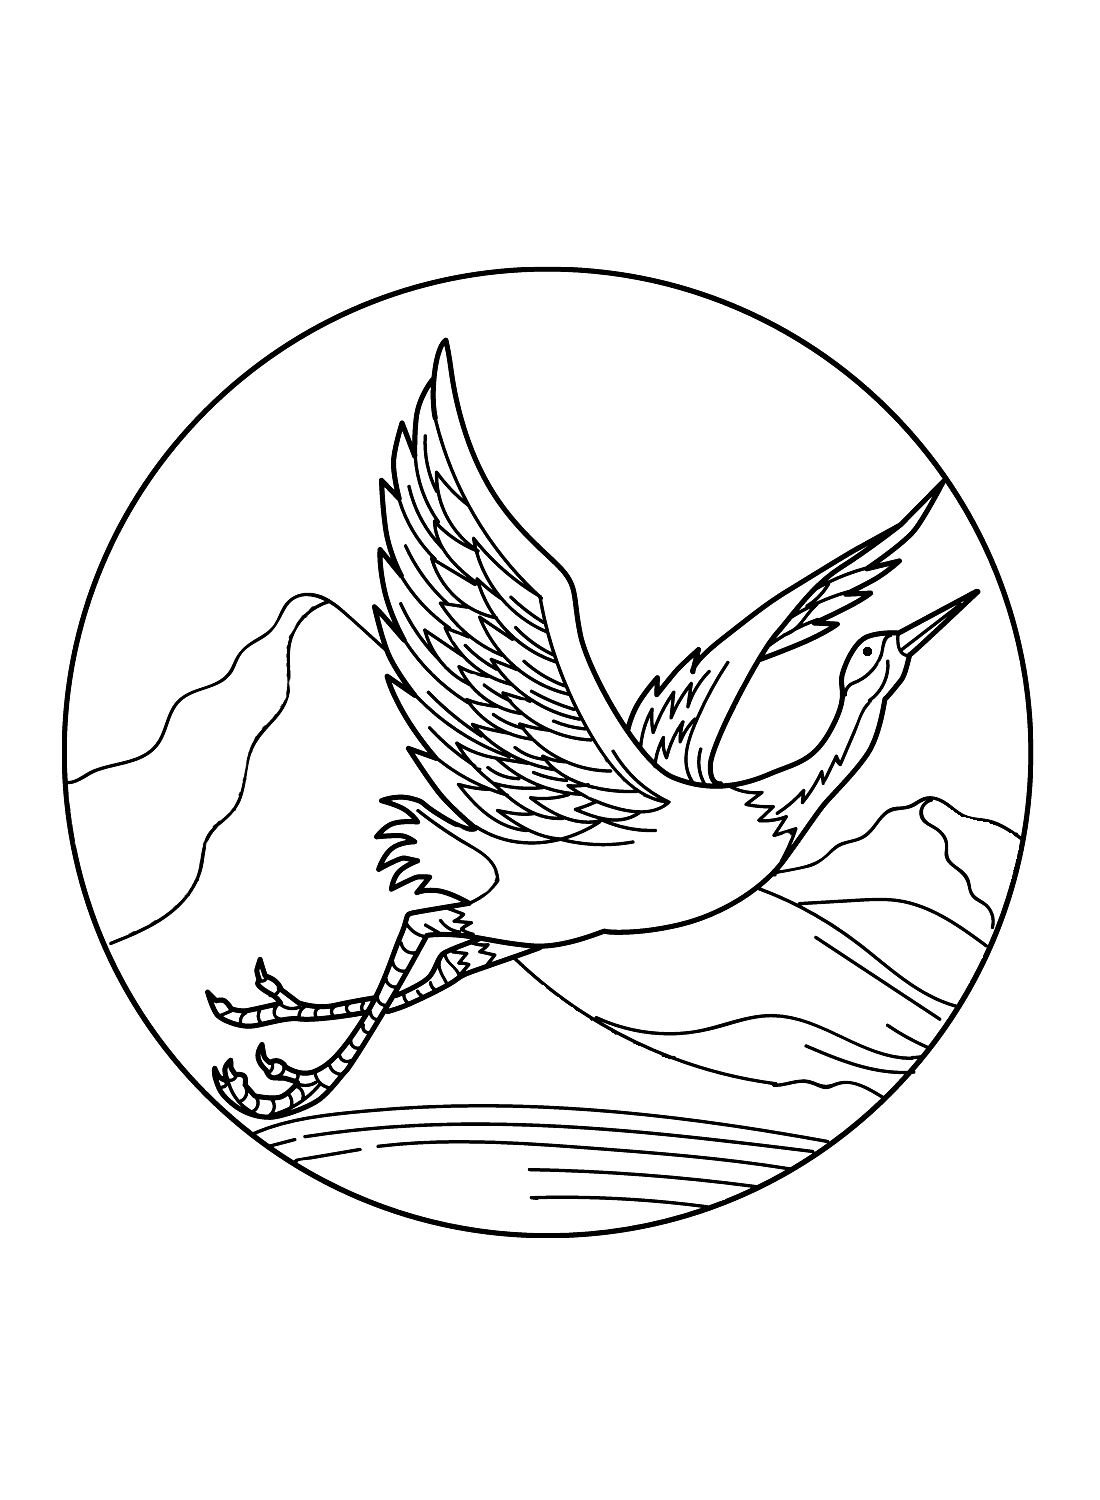 Fliegender Reiher von Heron